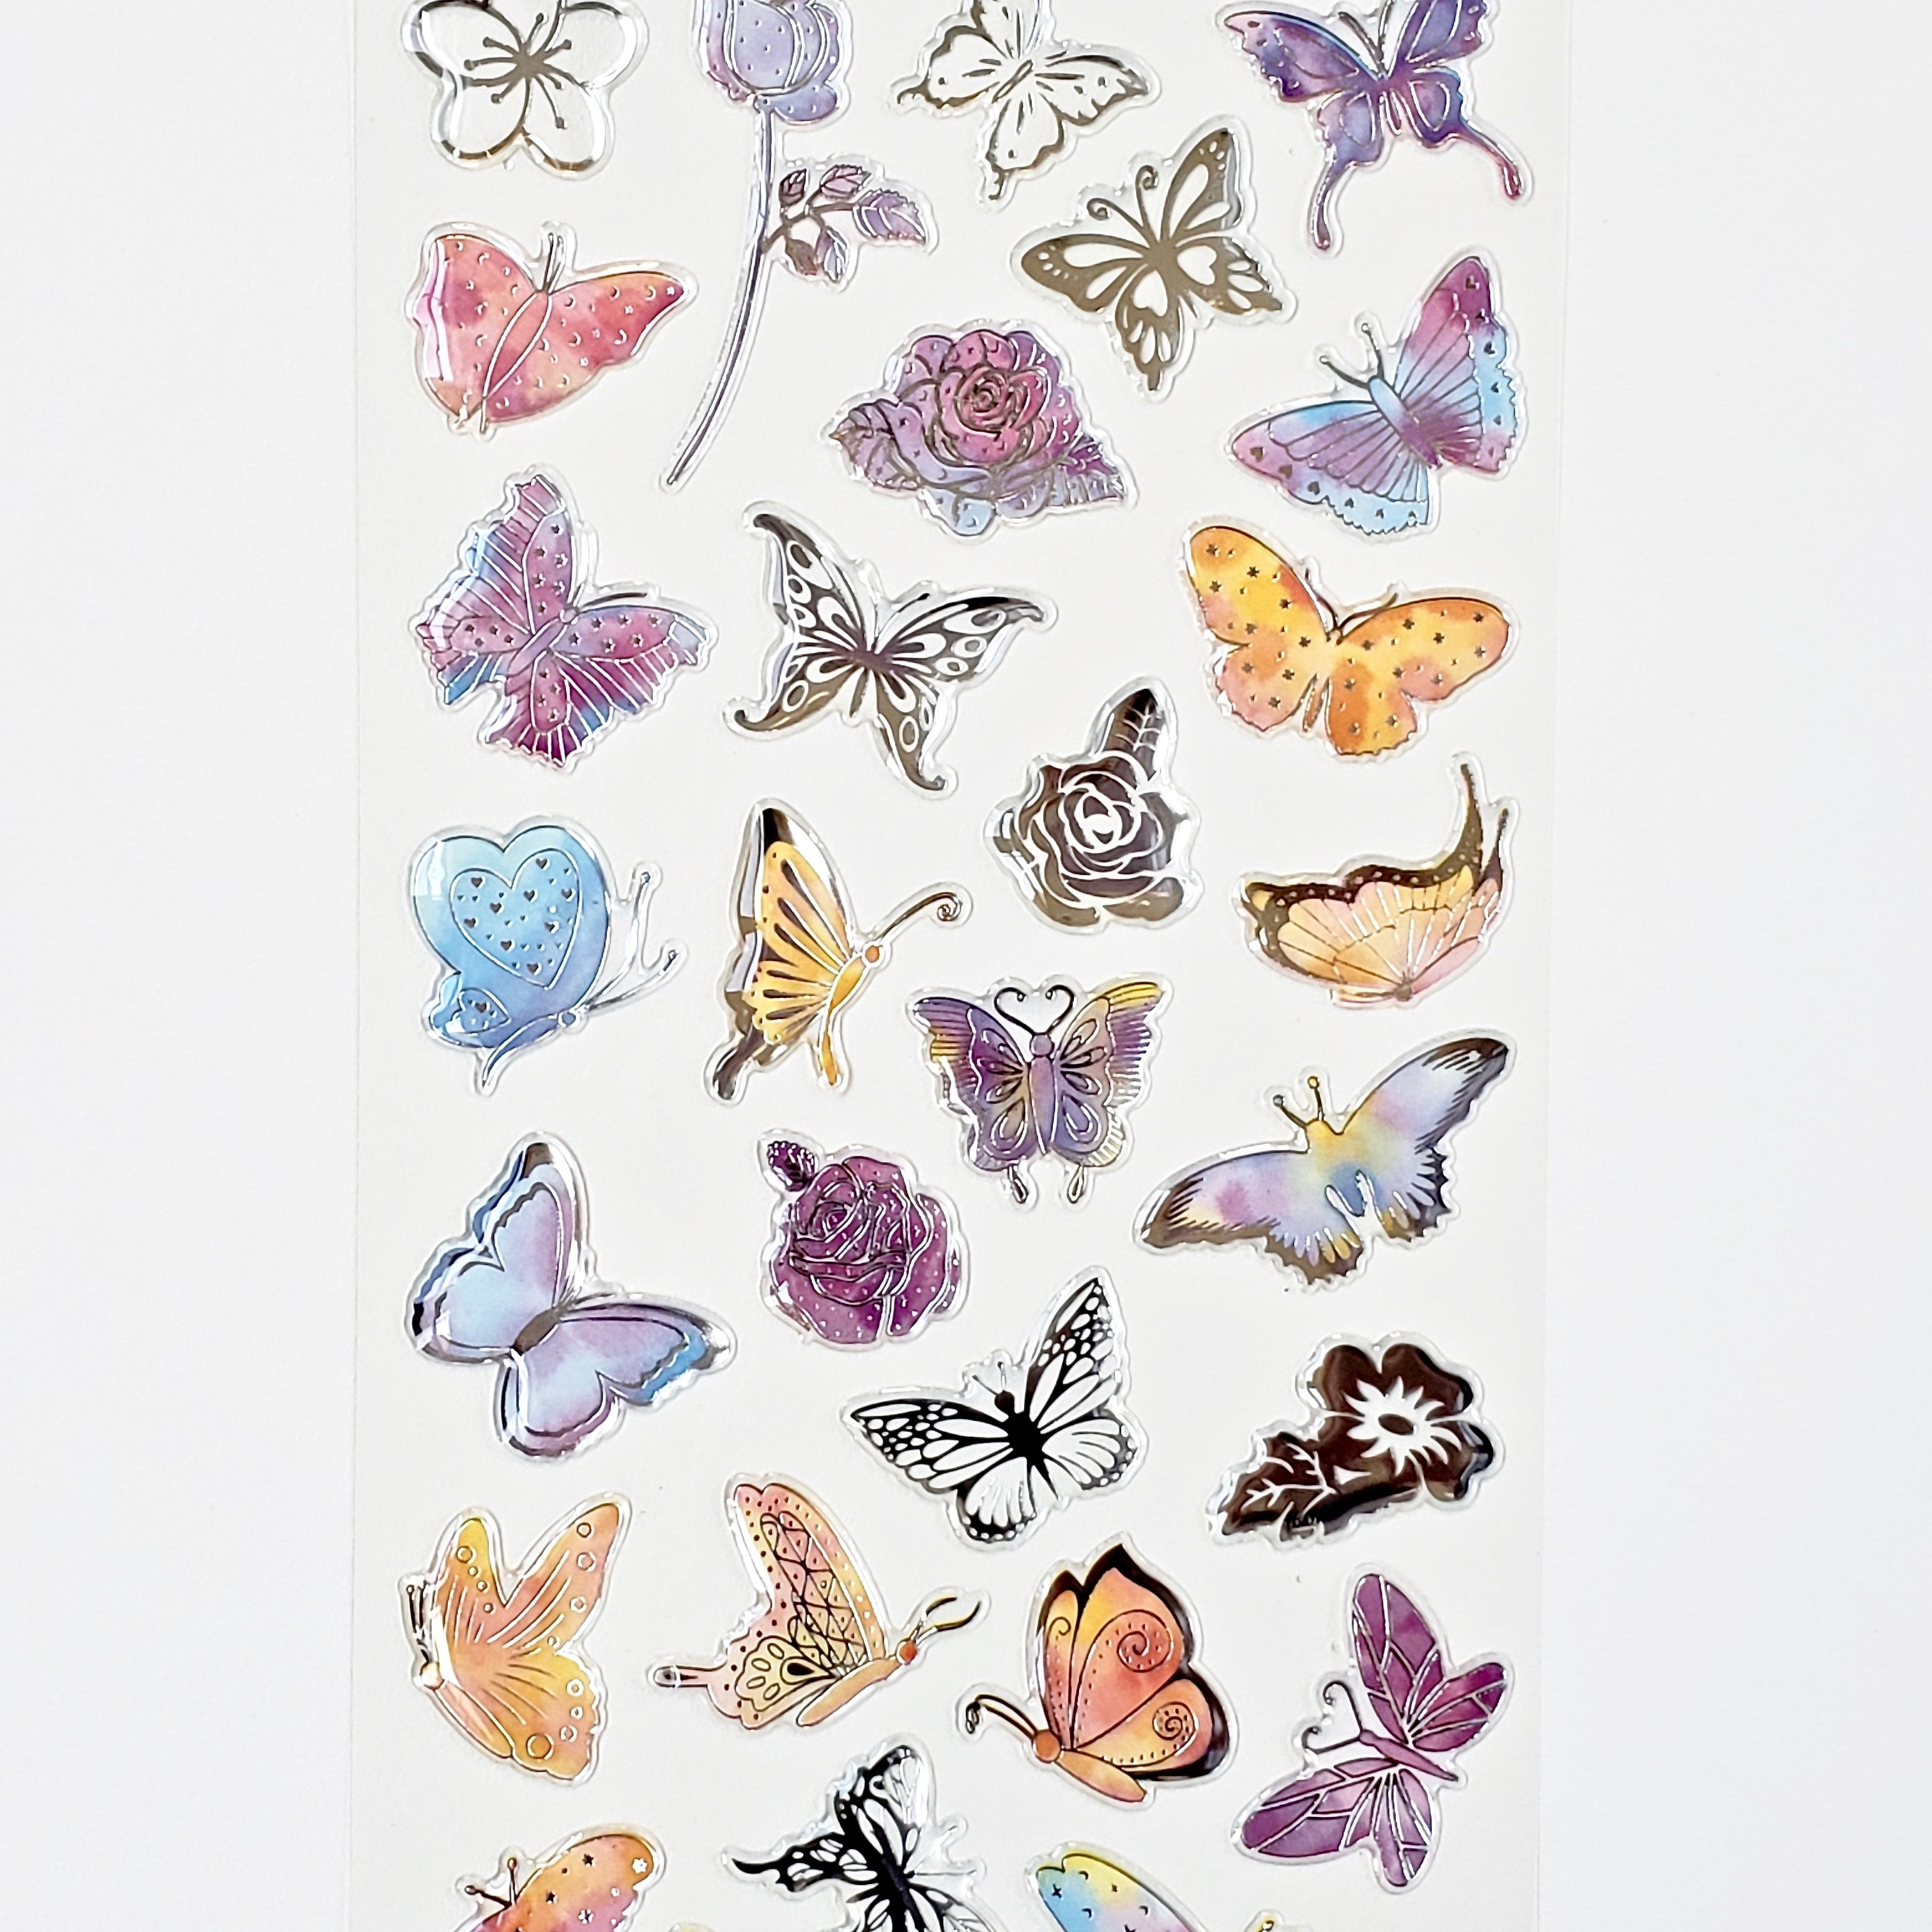 Nekoni Stickers: Crystal Gel Butterflies